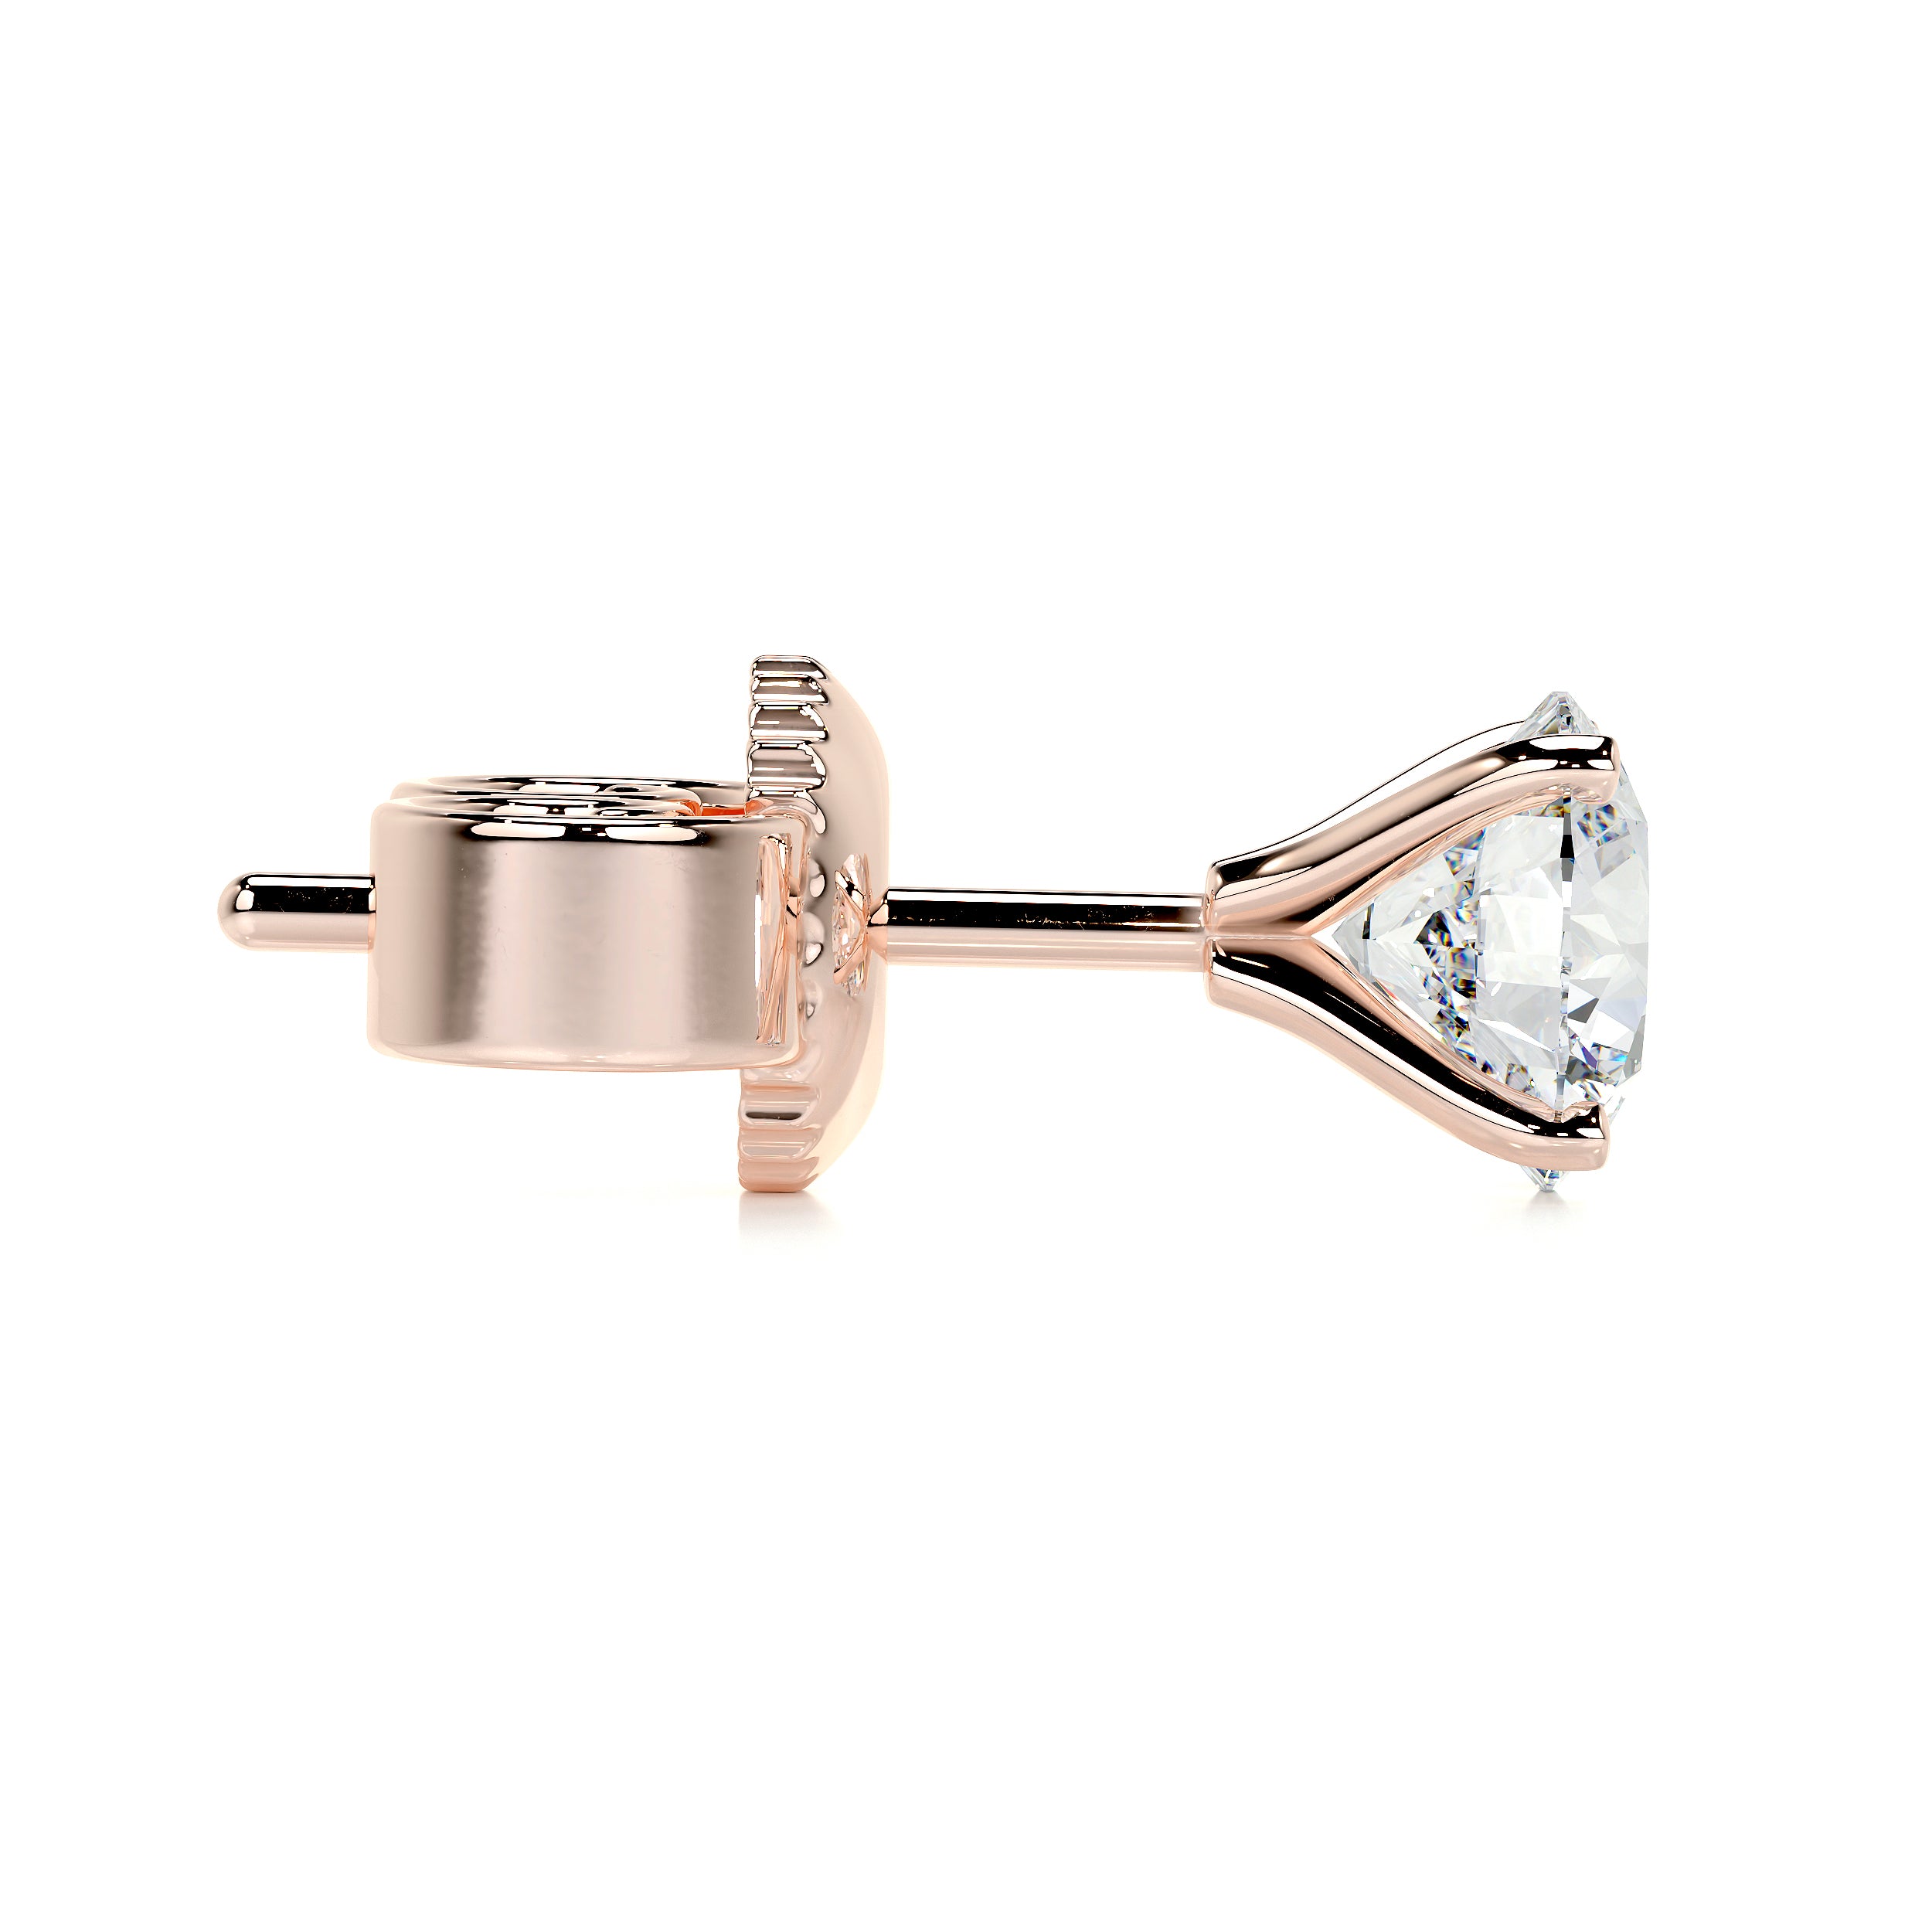 Allen Lab Grown Diamond Earrings   (3 Carat) -14K Rose Gold